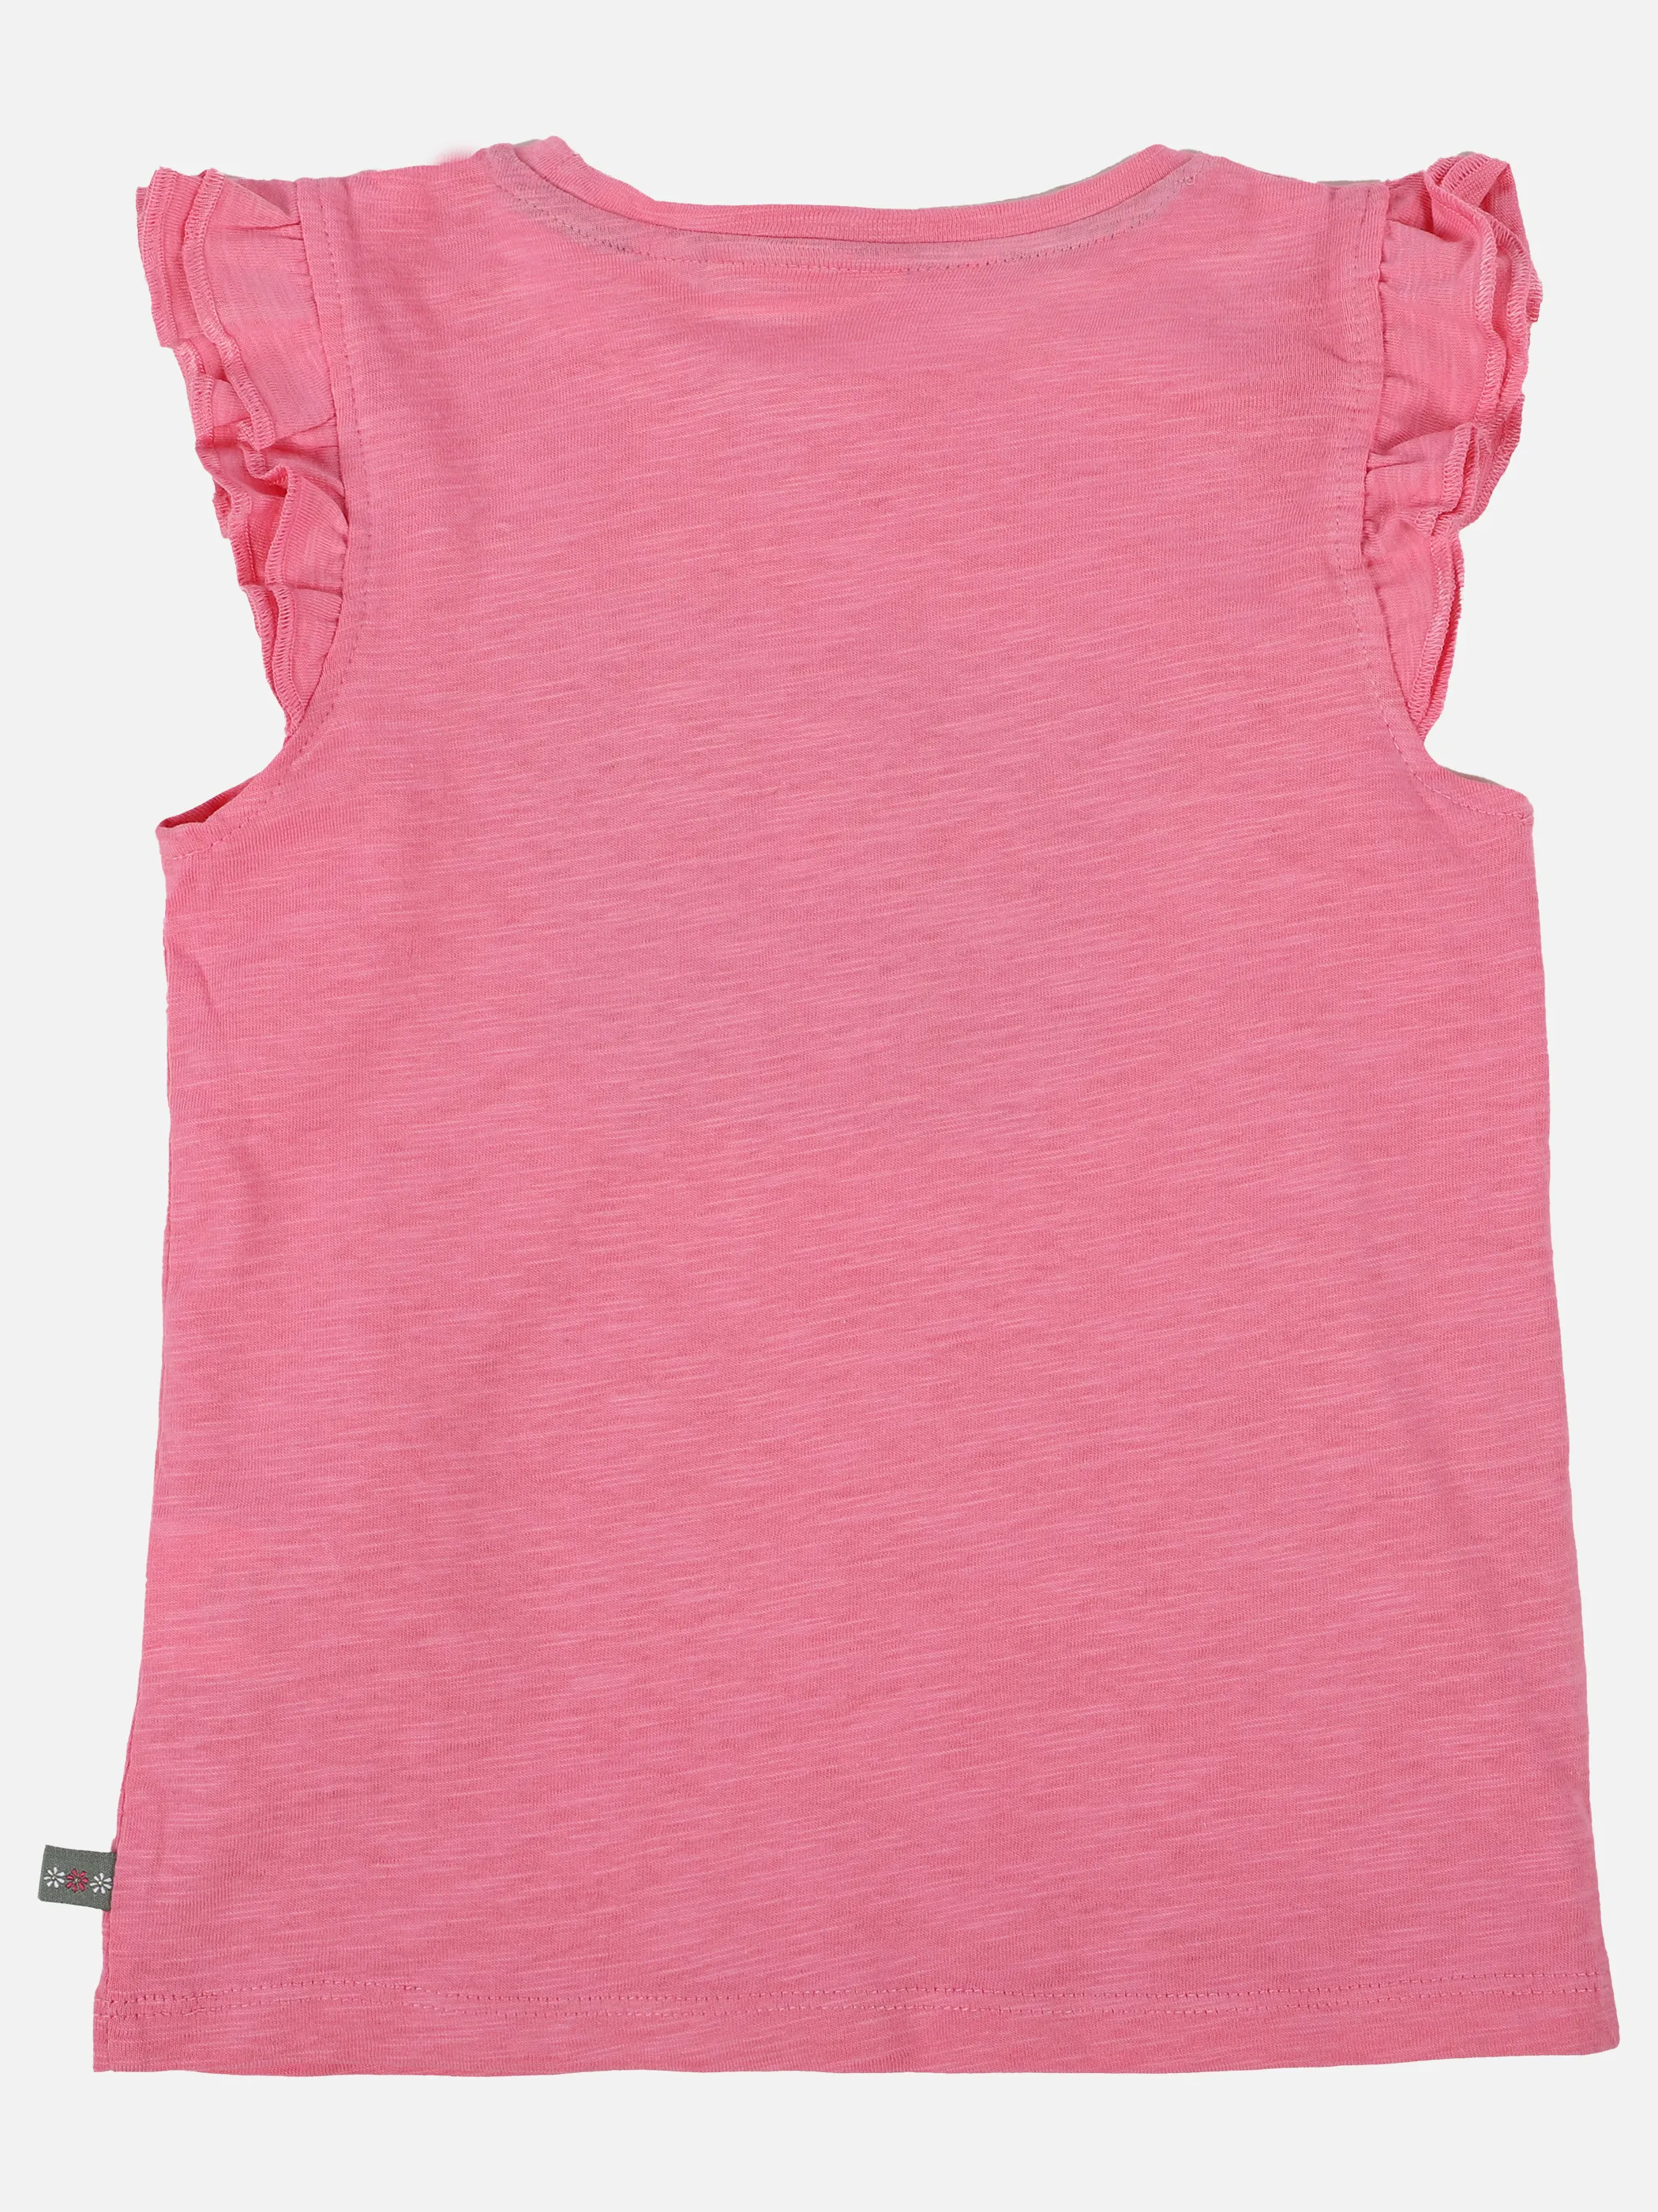 Stop + Go KM T-Shirt mit Stickerei in pink Pink 891524 PINK 2